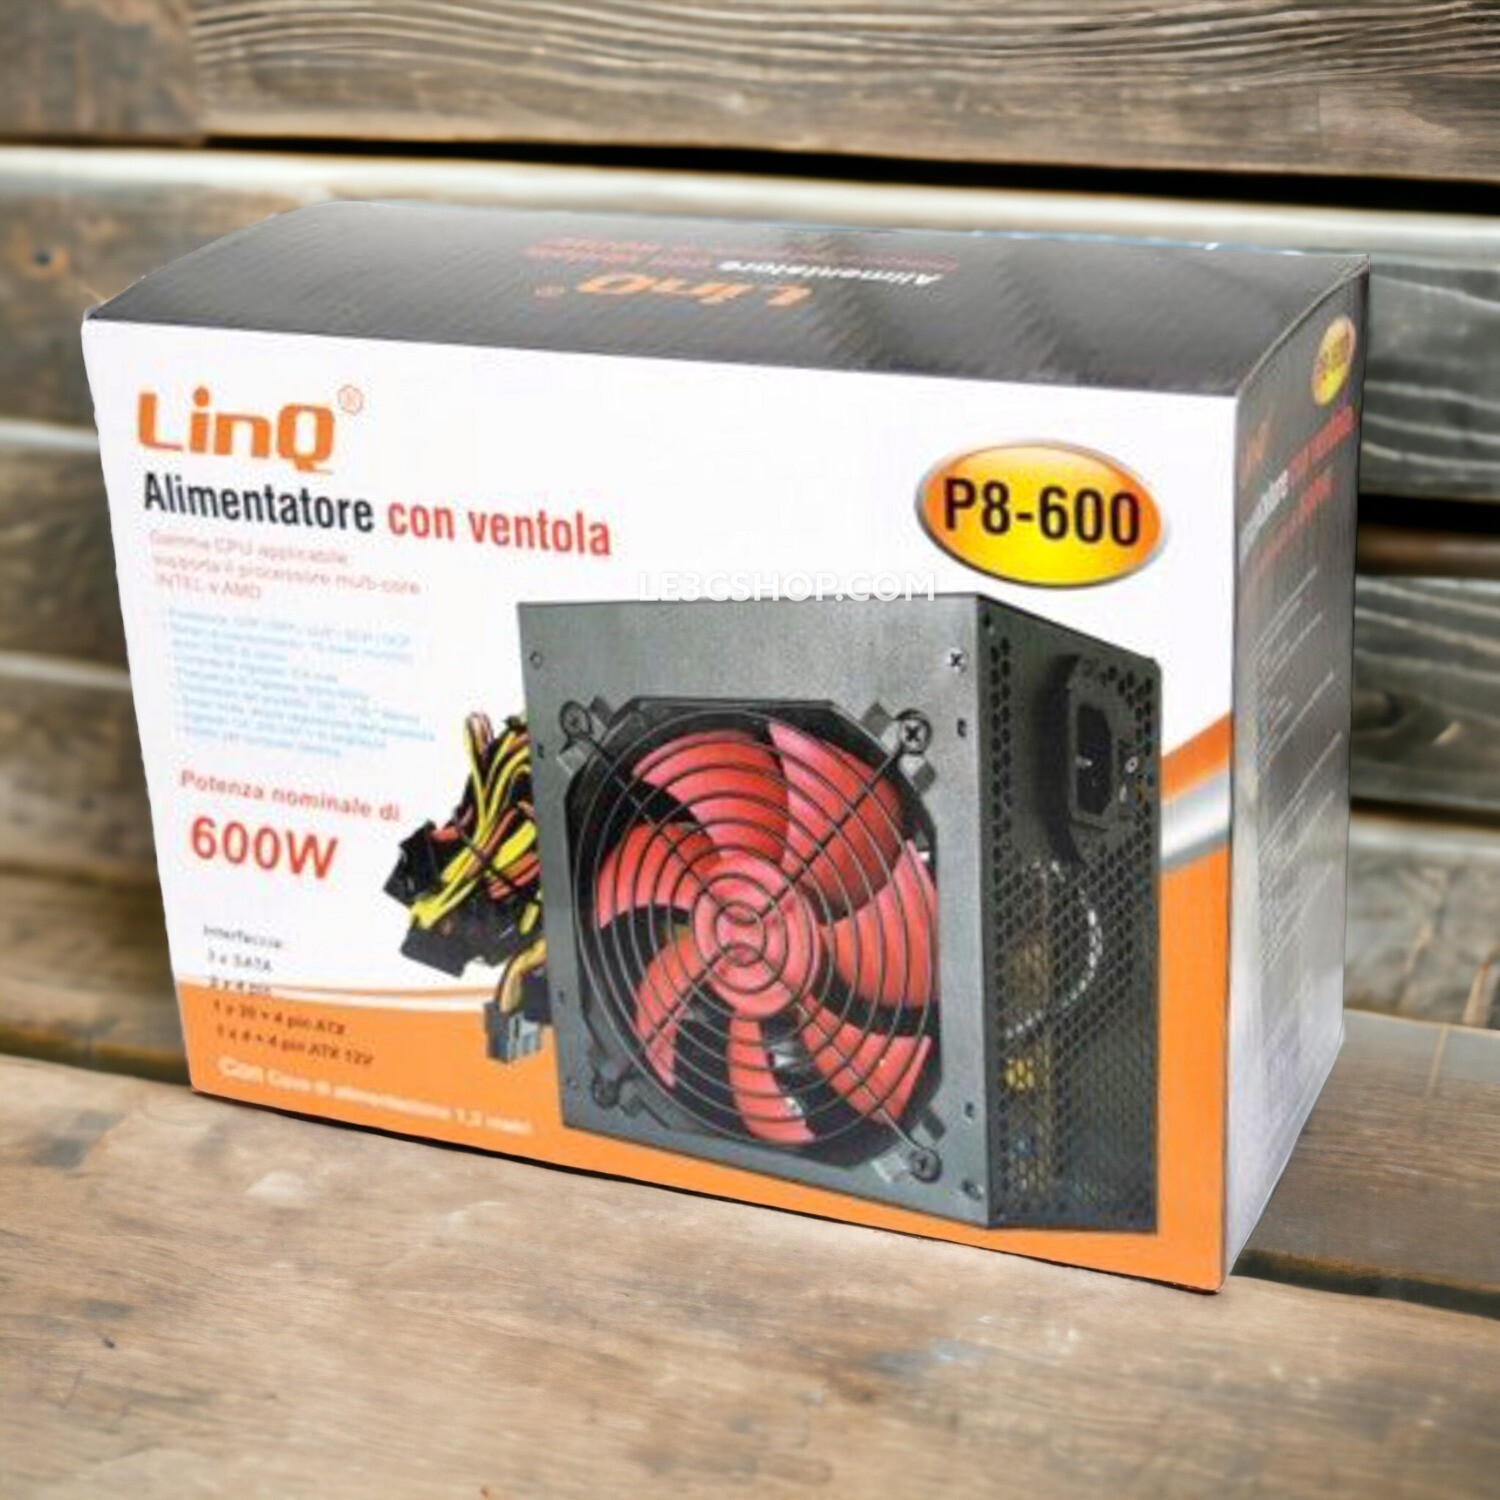 Alimentatore Ventilato LINQ 600W P8-600 con Protezione da Sovraccarico